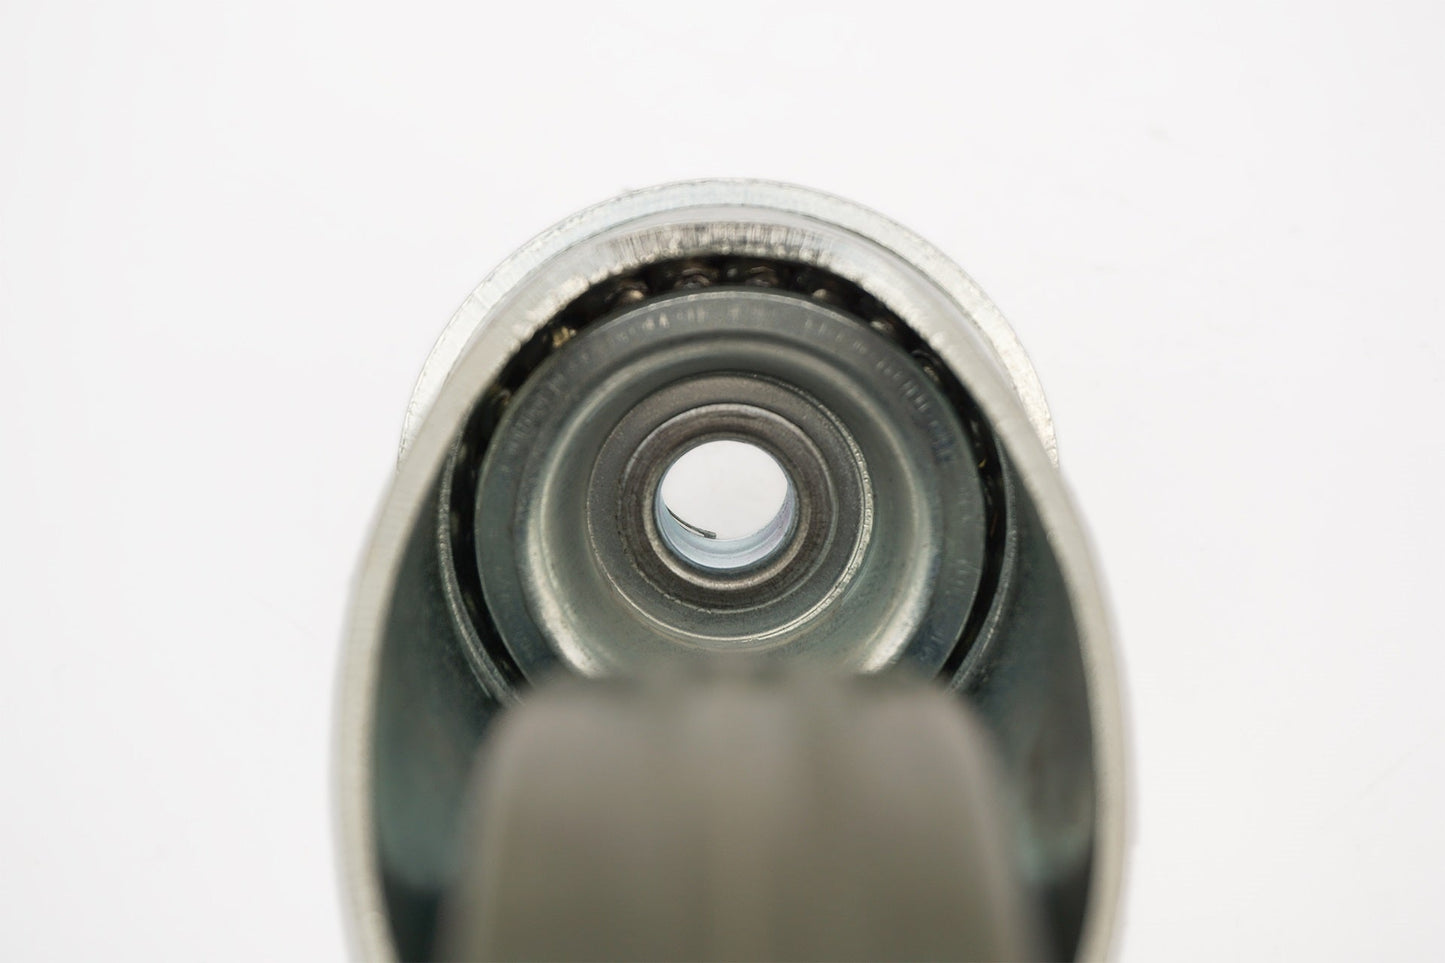 łożysko ślizgowe zestawu kołowego Ø 75 mm (2x skrętny, 2x skrętny z hamulcem), guma niebrudząca szara | 3056/3057-75